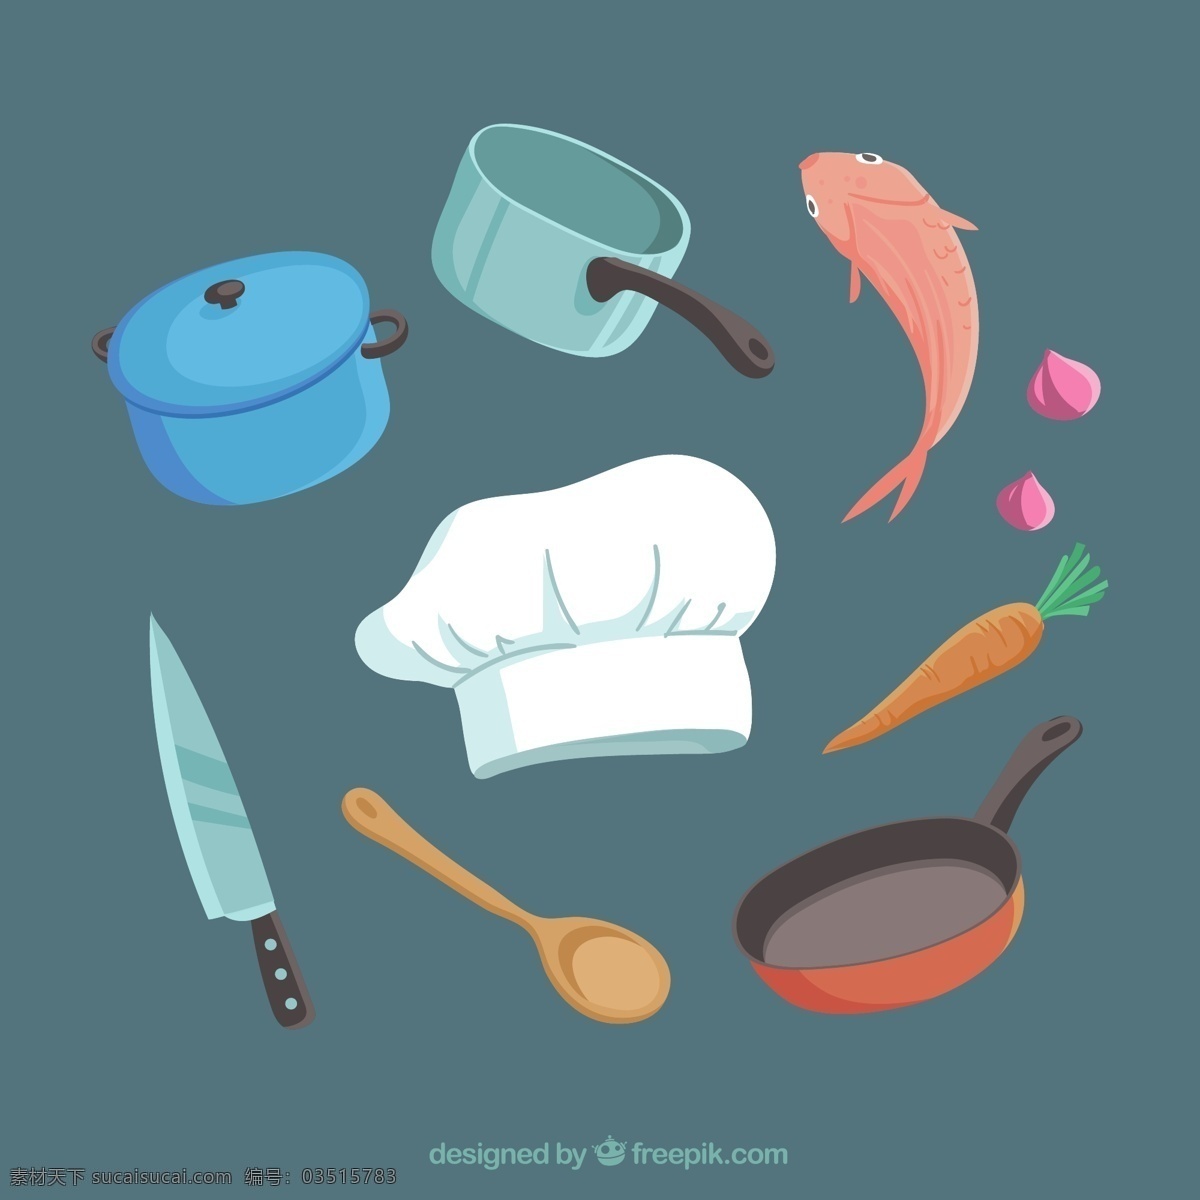 厨师 帽 包 食 材 烹饪 用具 食物 菜单 餐馆 鱼 面包房 厨房 家庭 餐厅菜单 有机 健康 食物菜单 帽子 健康食品 饮食 营养 刀 吃 食谱